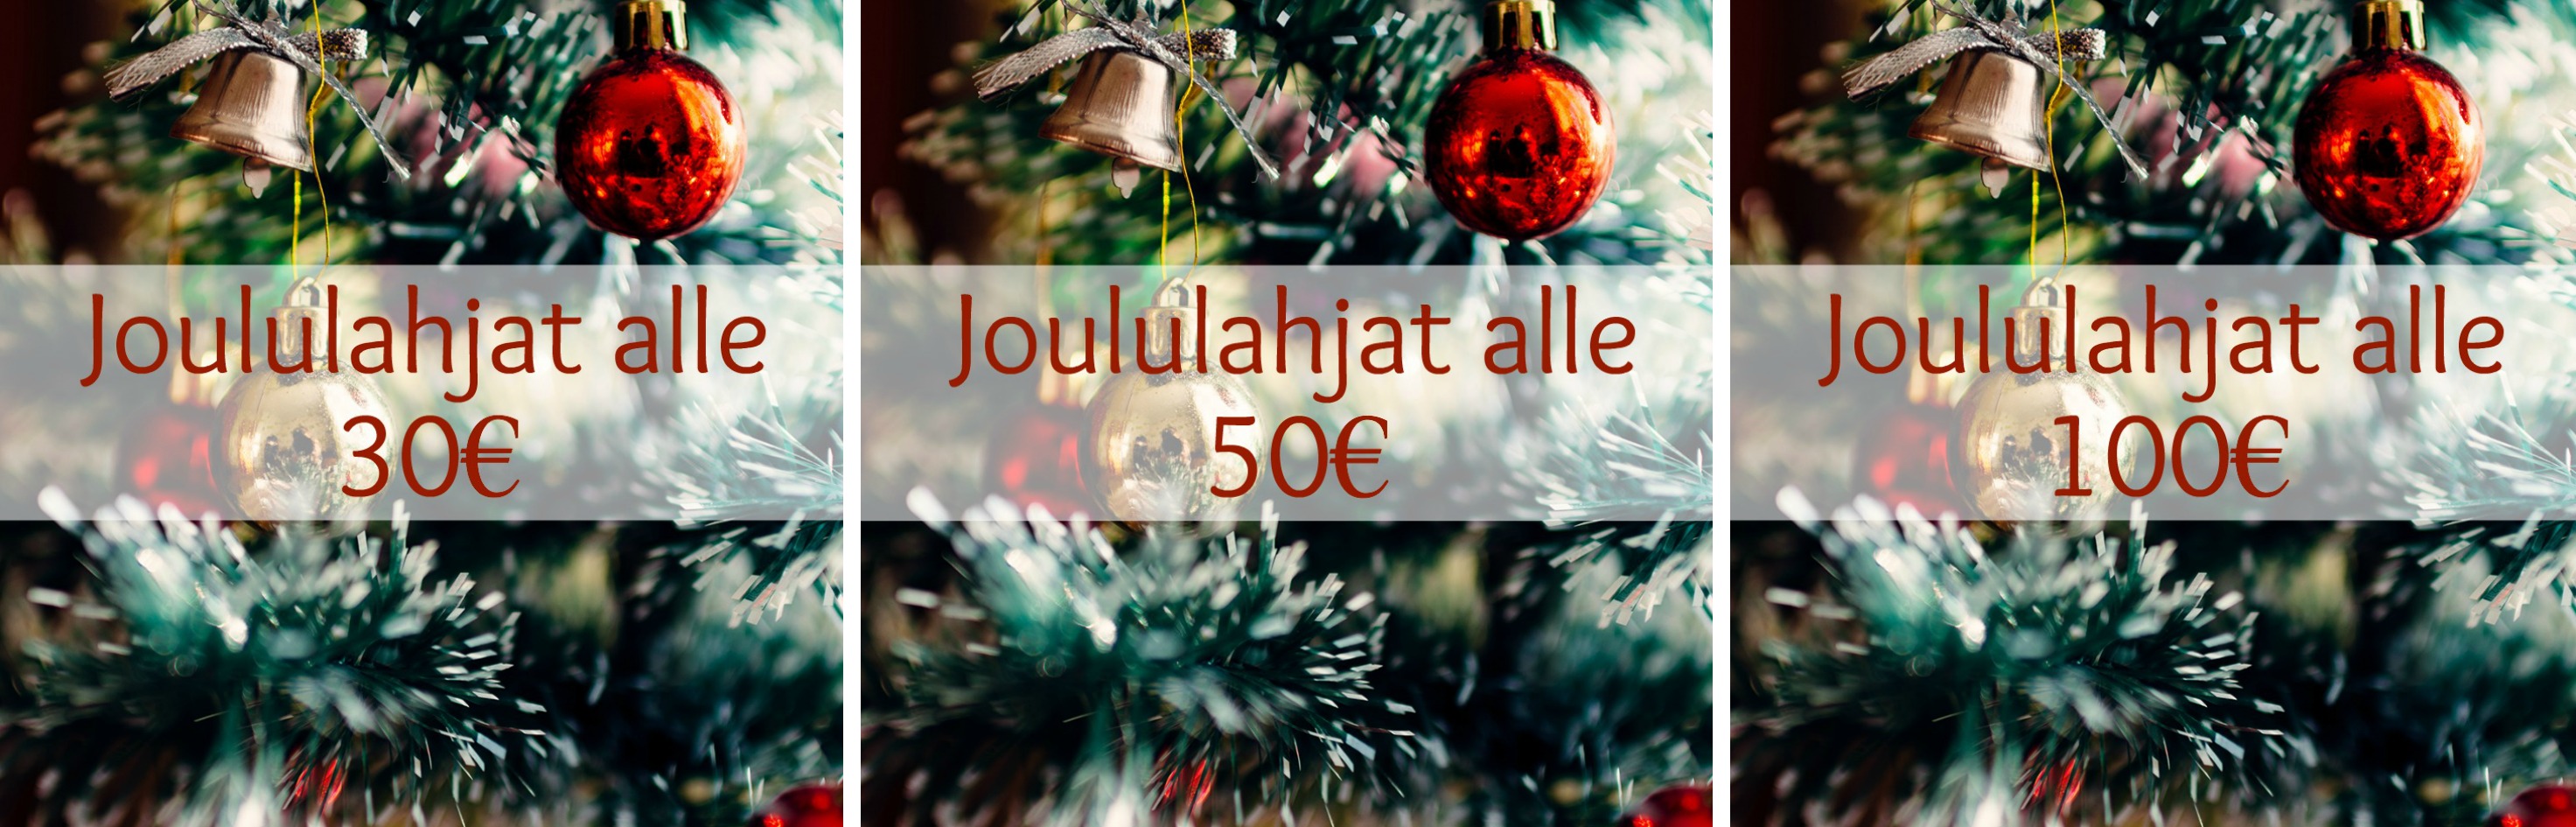 Stockmann Joululahjat alle 30e